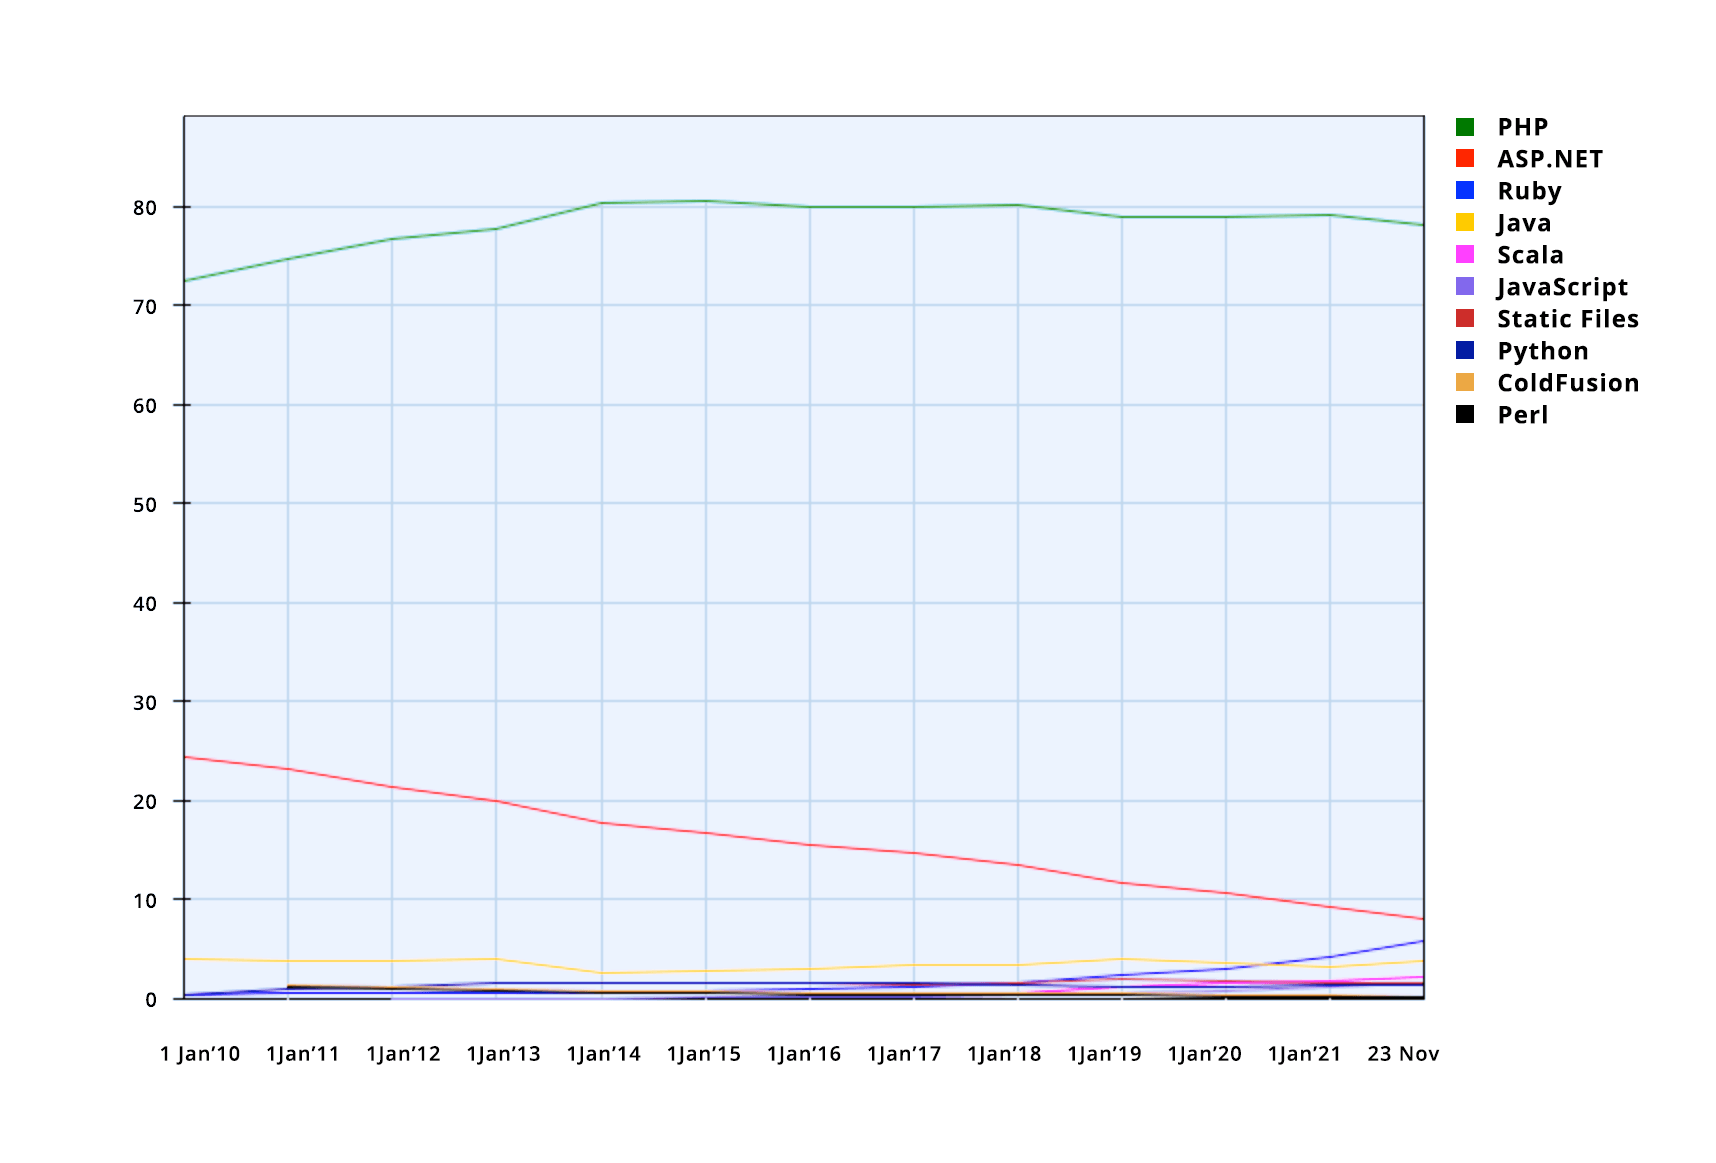 Usage of server-side programming languages for websites, 23 Nov 2021